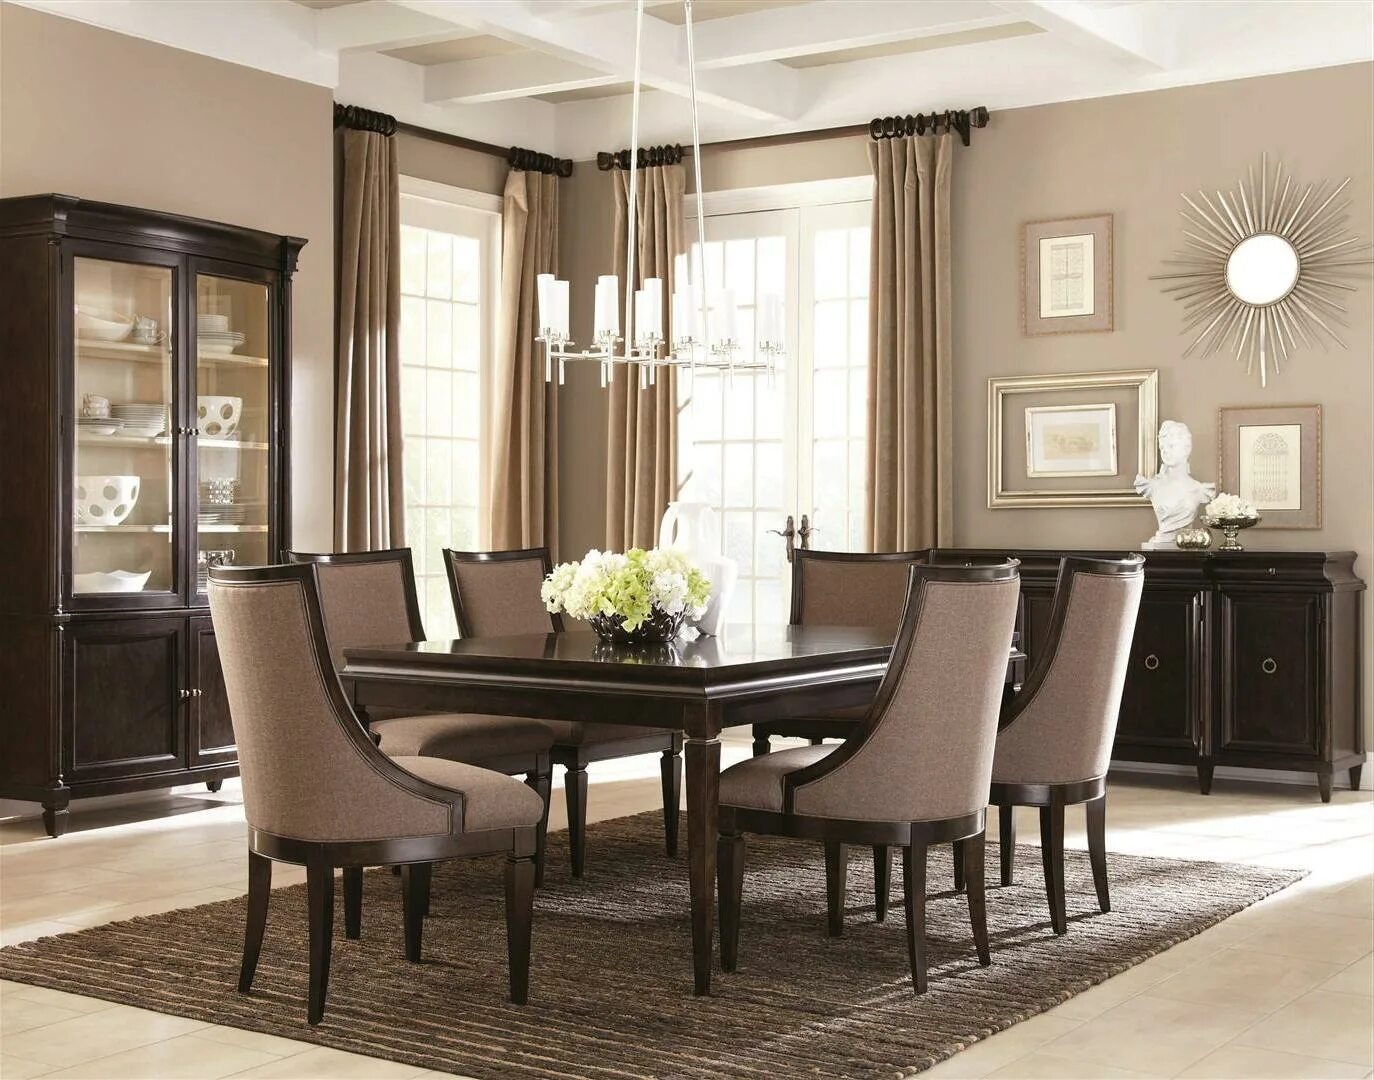 Фото стулья гостиной. Гостиная со столом и стульями. Обеденный стол в американском стиле. Мебель для столовой в современном стиле. Столы для столовой в гостиную.